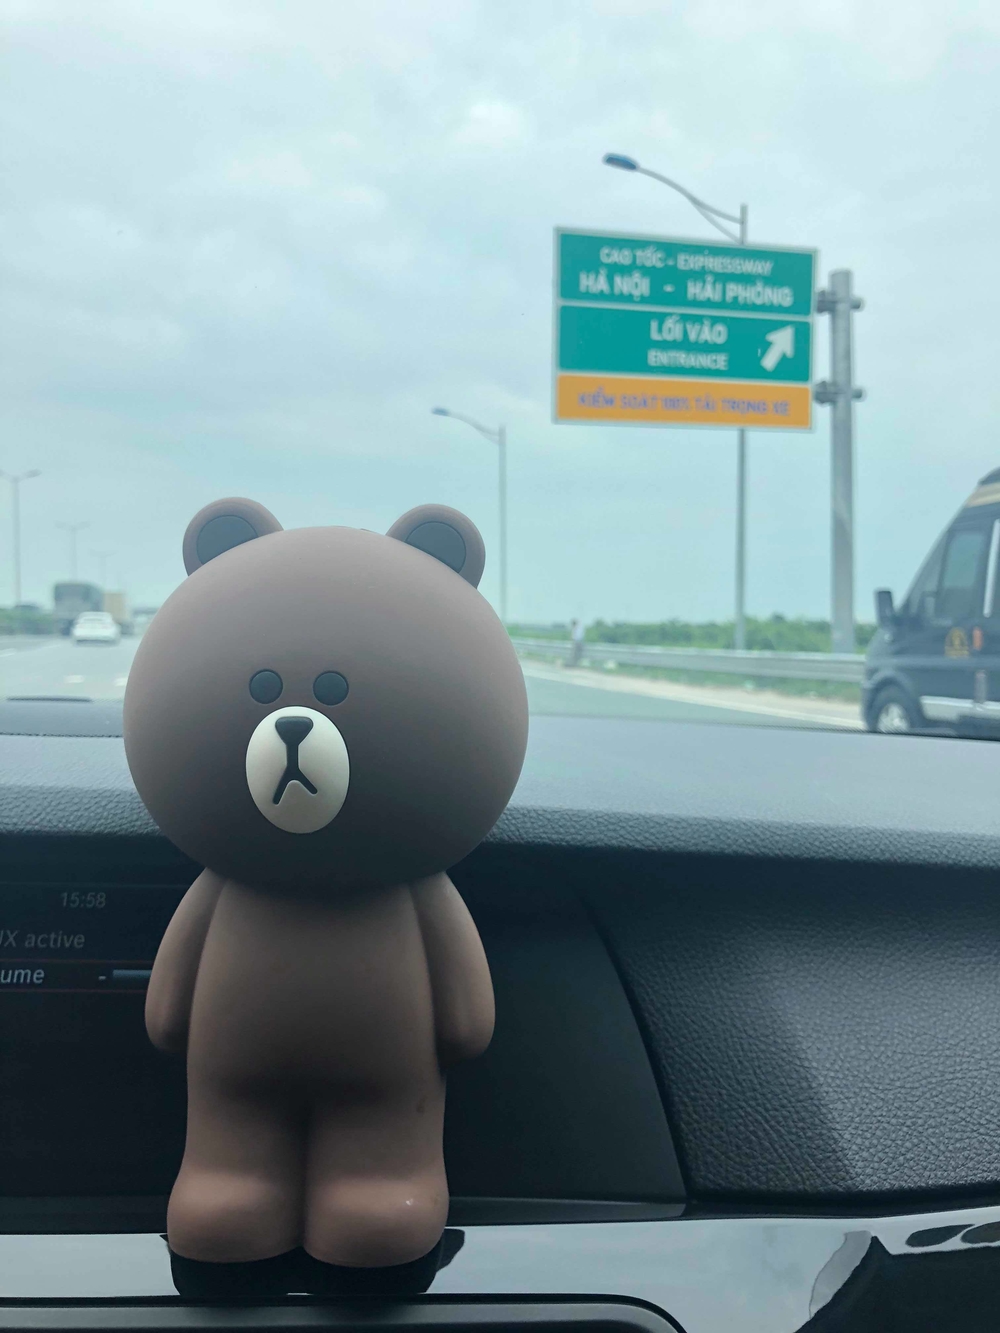 
Gấu Brown cùng Thu Hương có những chuyến đi xa với nhau